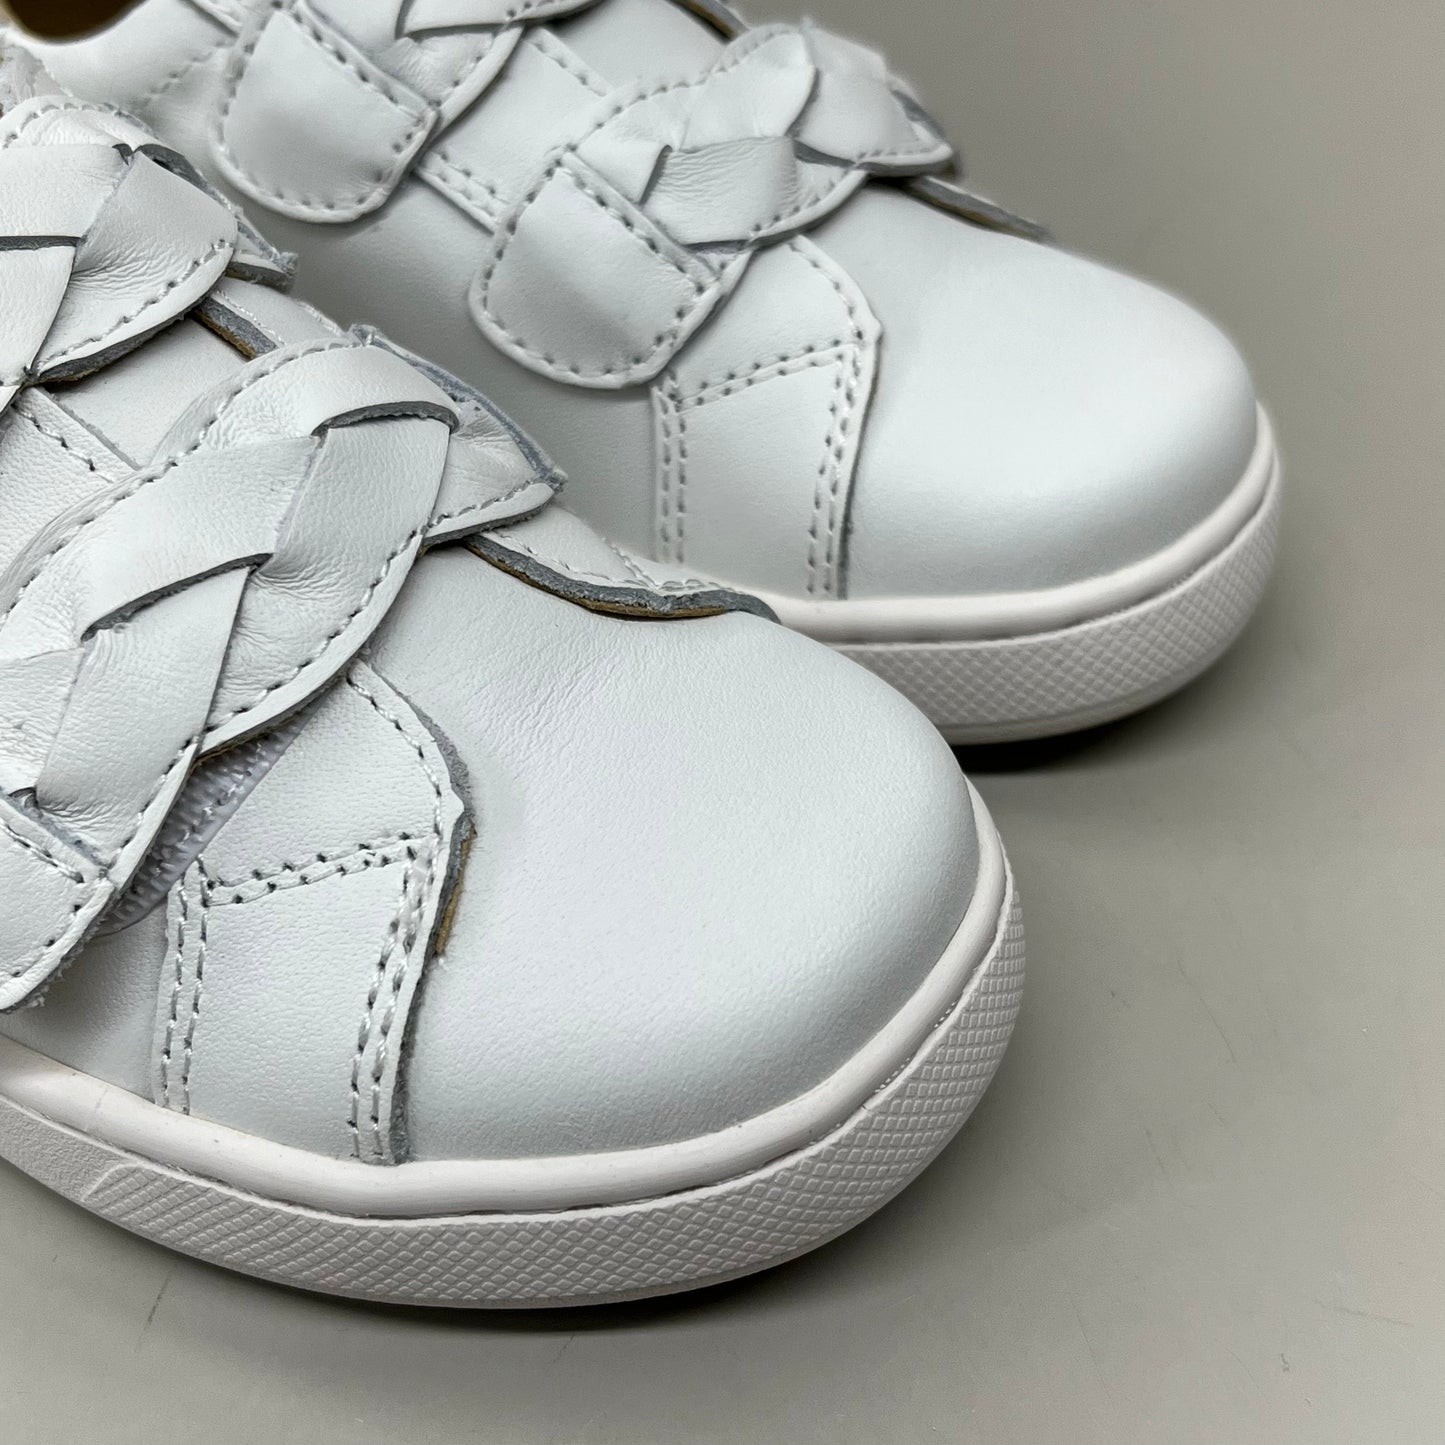 OLD SOLES Kid's Plats Leather Shoe Sz 1 EU 32 Snow / Silver #6134